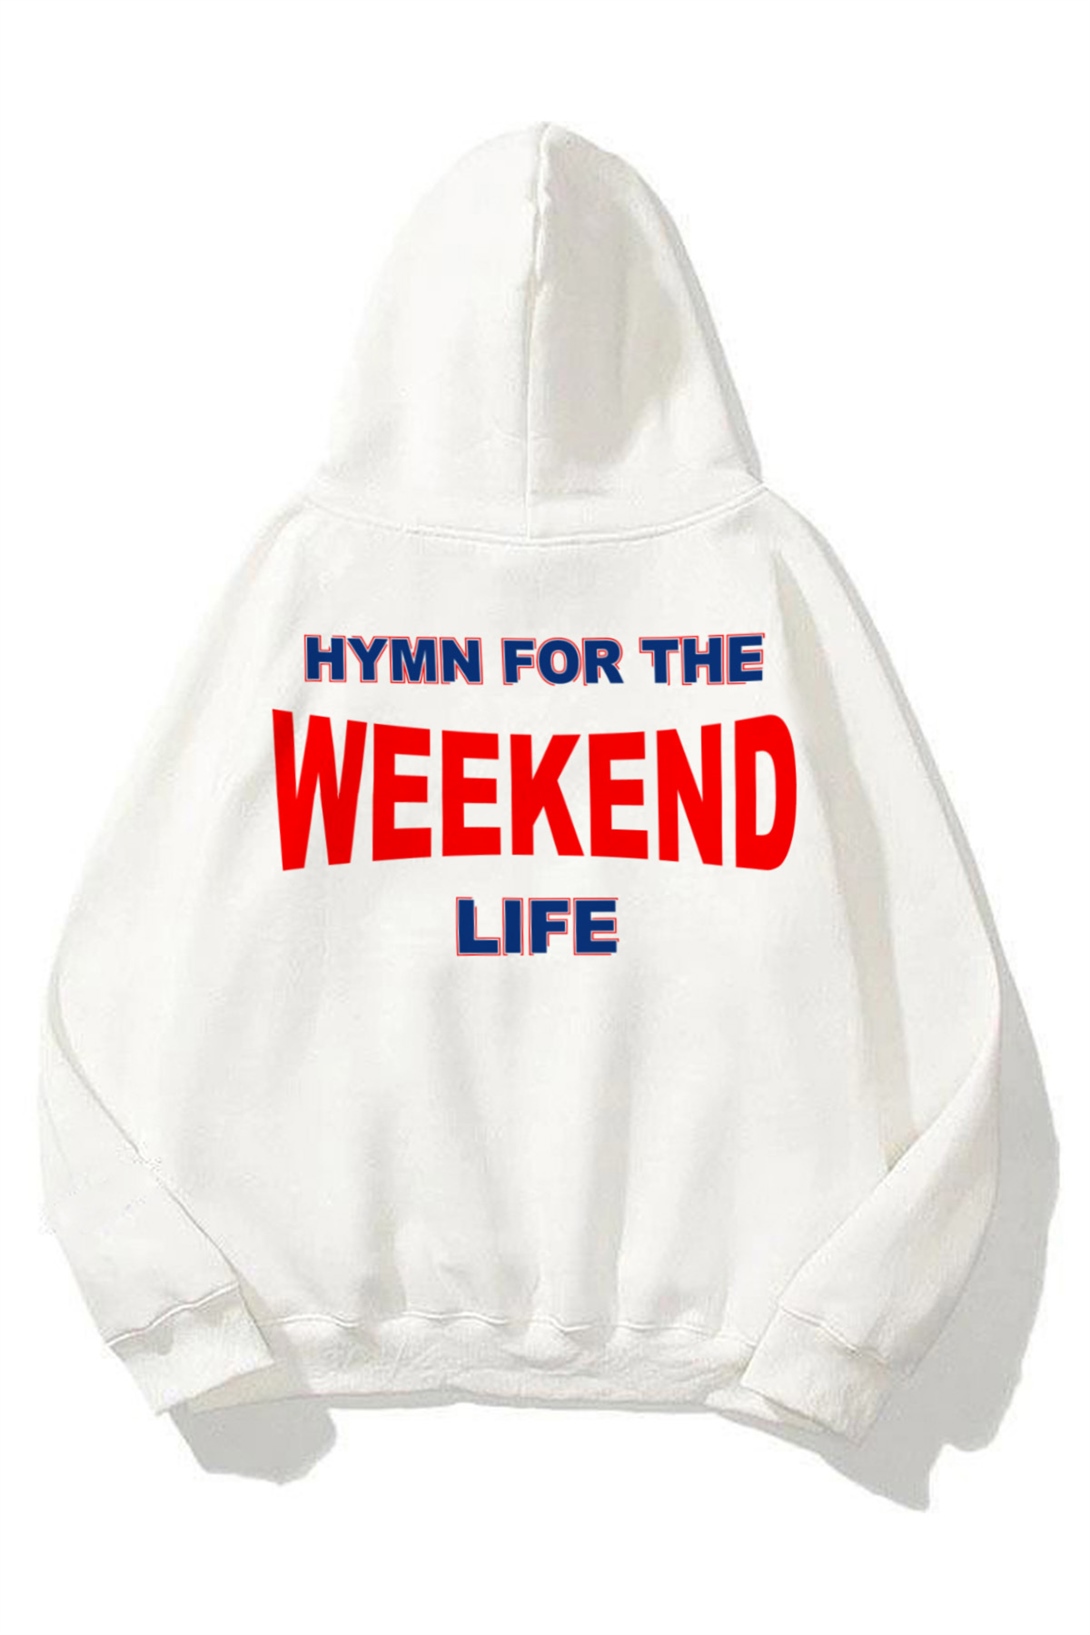 Trendiz Hymn For The Weekend Life Beyaz Unisex Sweatshirt